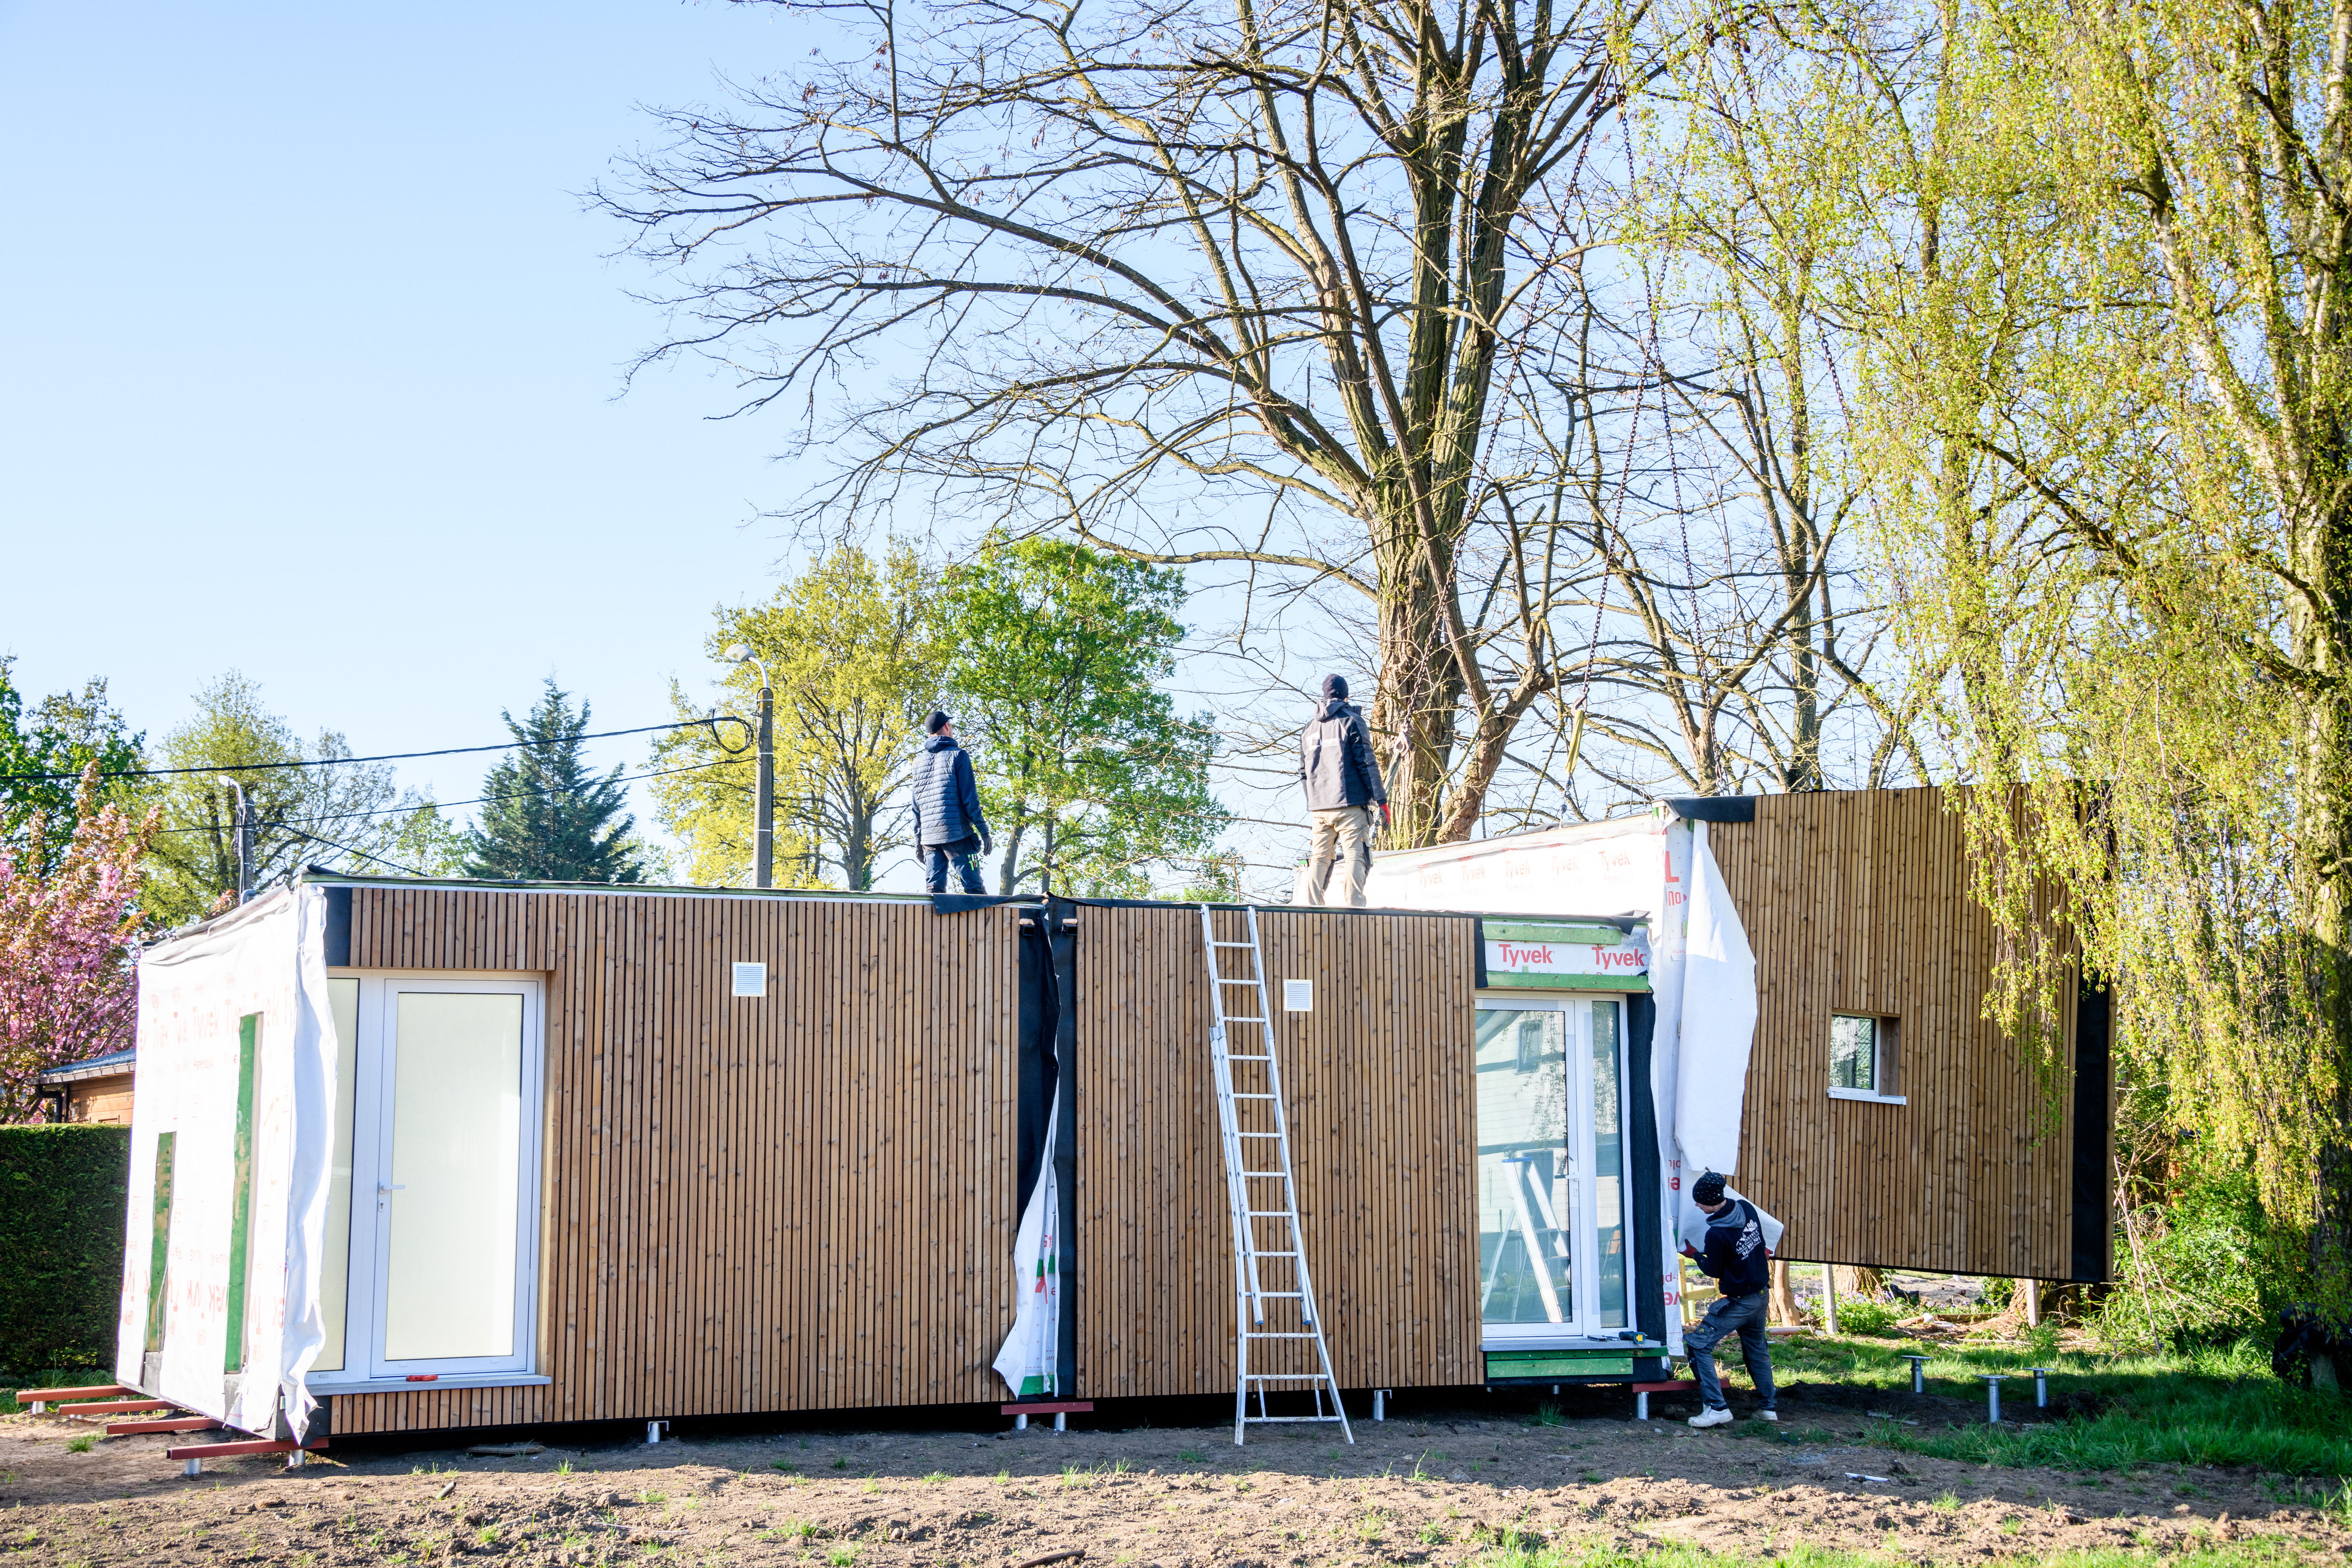 In Felix Cottage Club in Zemst werden zeven nieuwe kleinschalige wooneenheden gebouwd (copyright: Lander Loeckx)